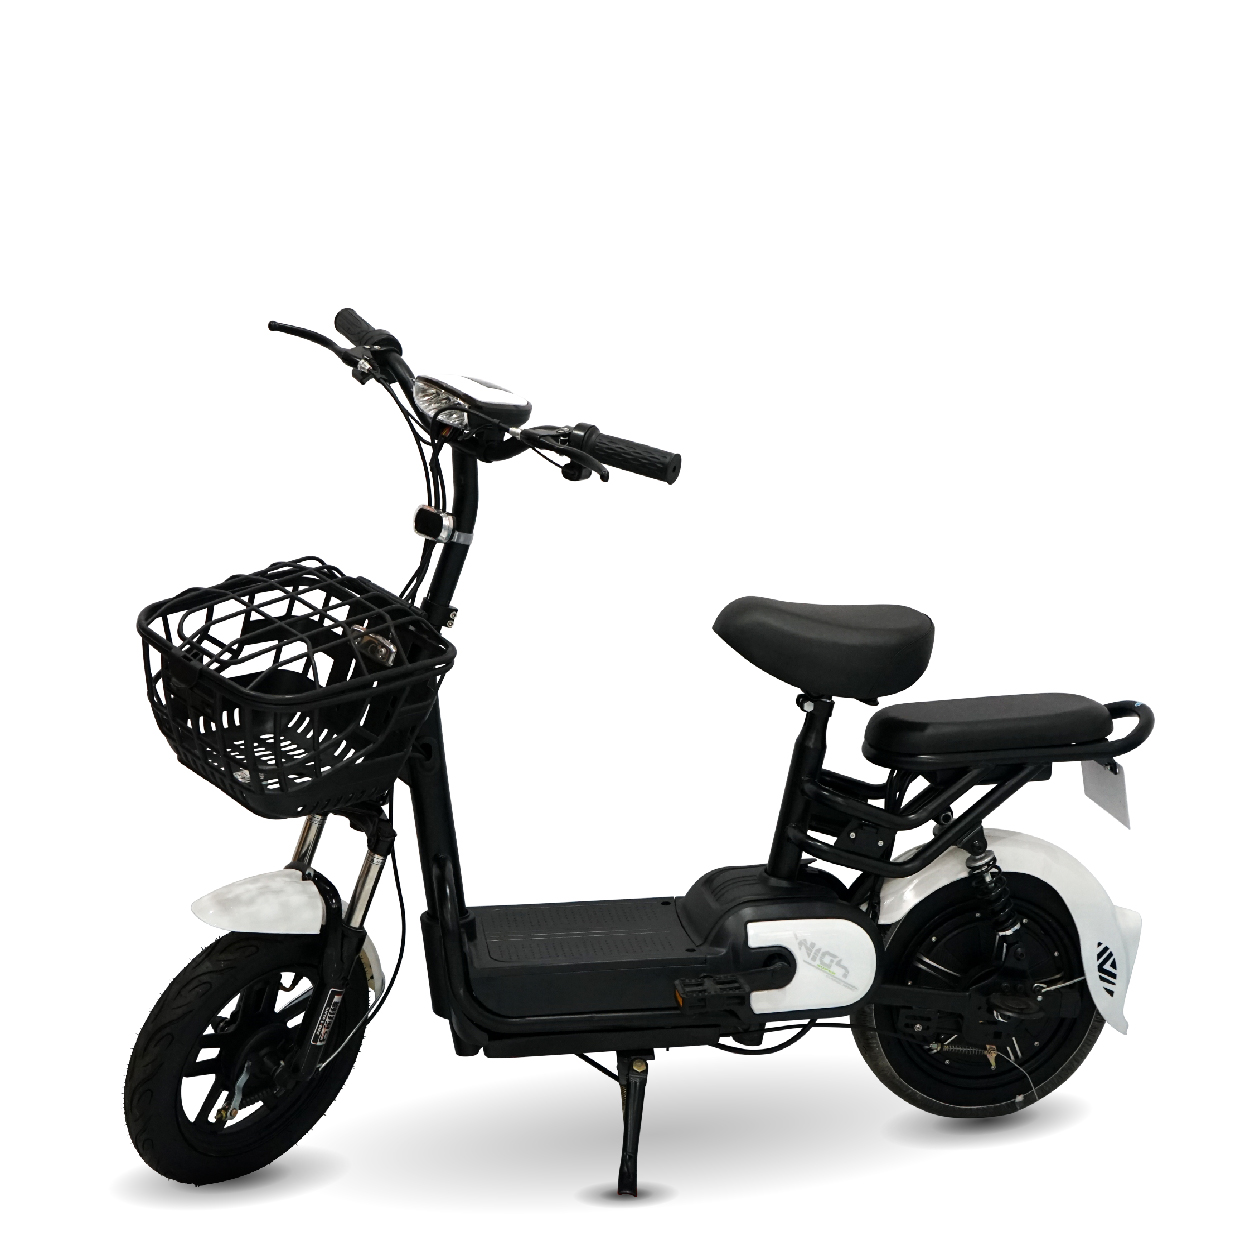 xe dap dien mini new 2021 ct 01 - Xe đạp điện mini new 2021